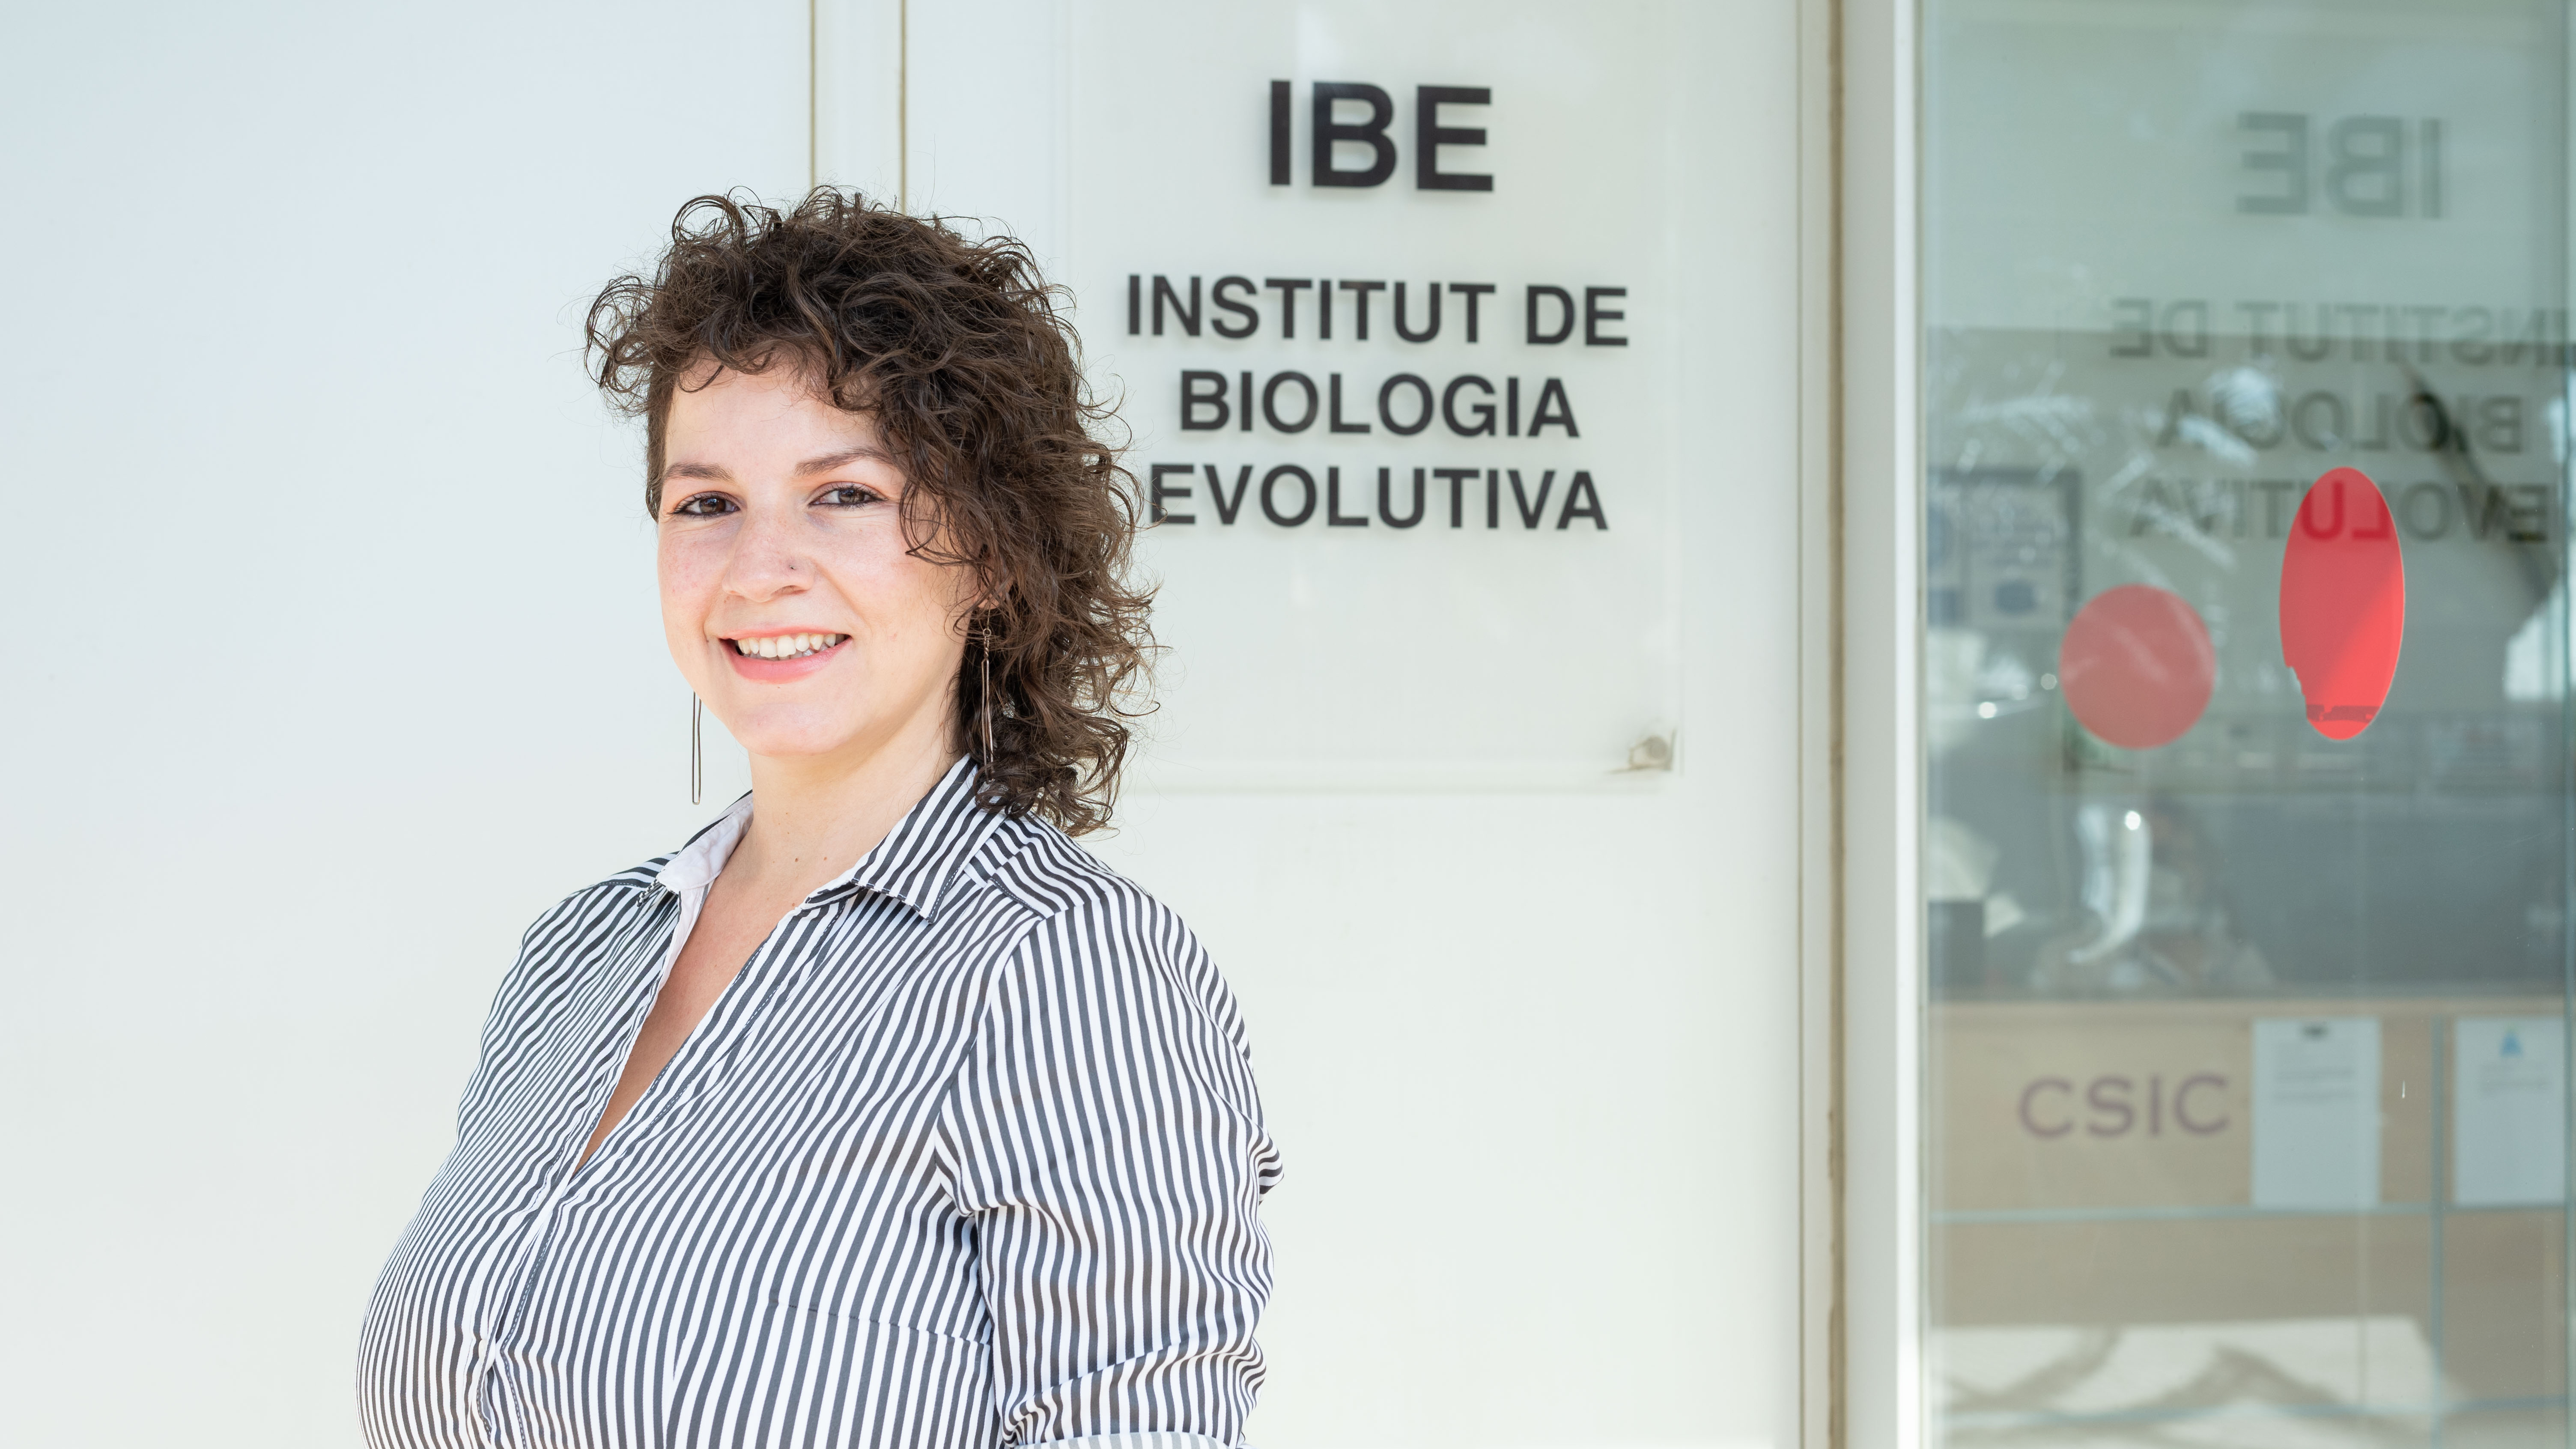 Rosa Fernández cree firmemente que es posible liderar grupos científicos de una manera alternativa dejando de lado la jerarquía. Crédito: IBE-CSIC